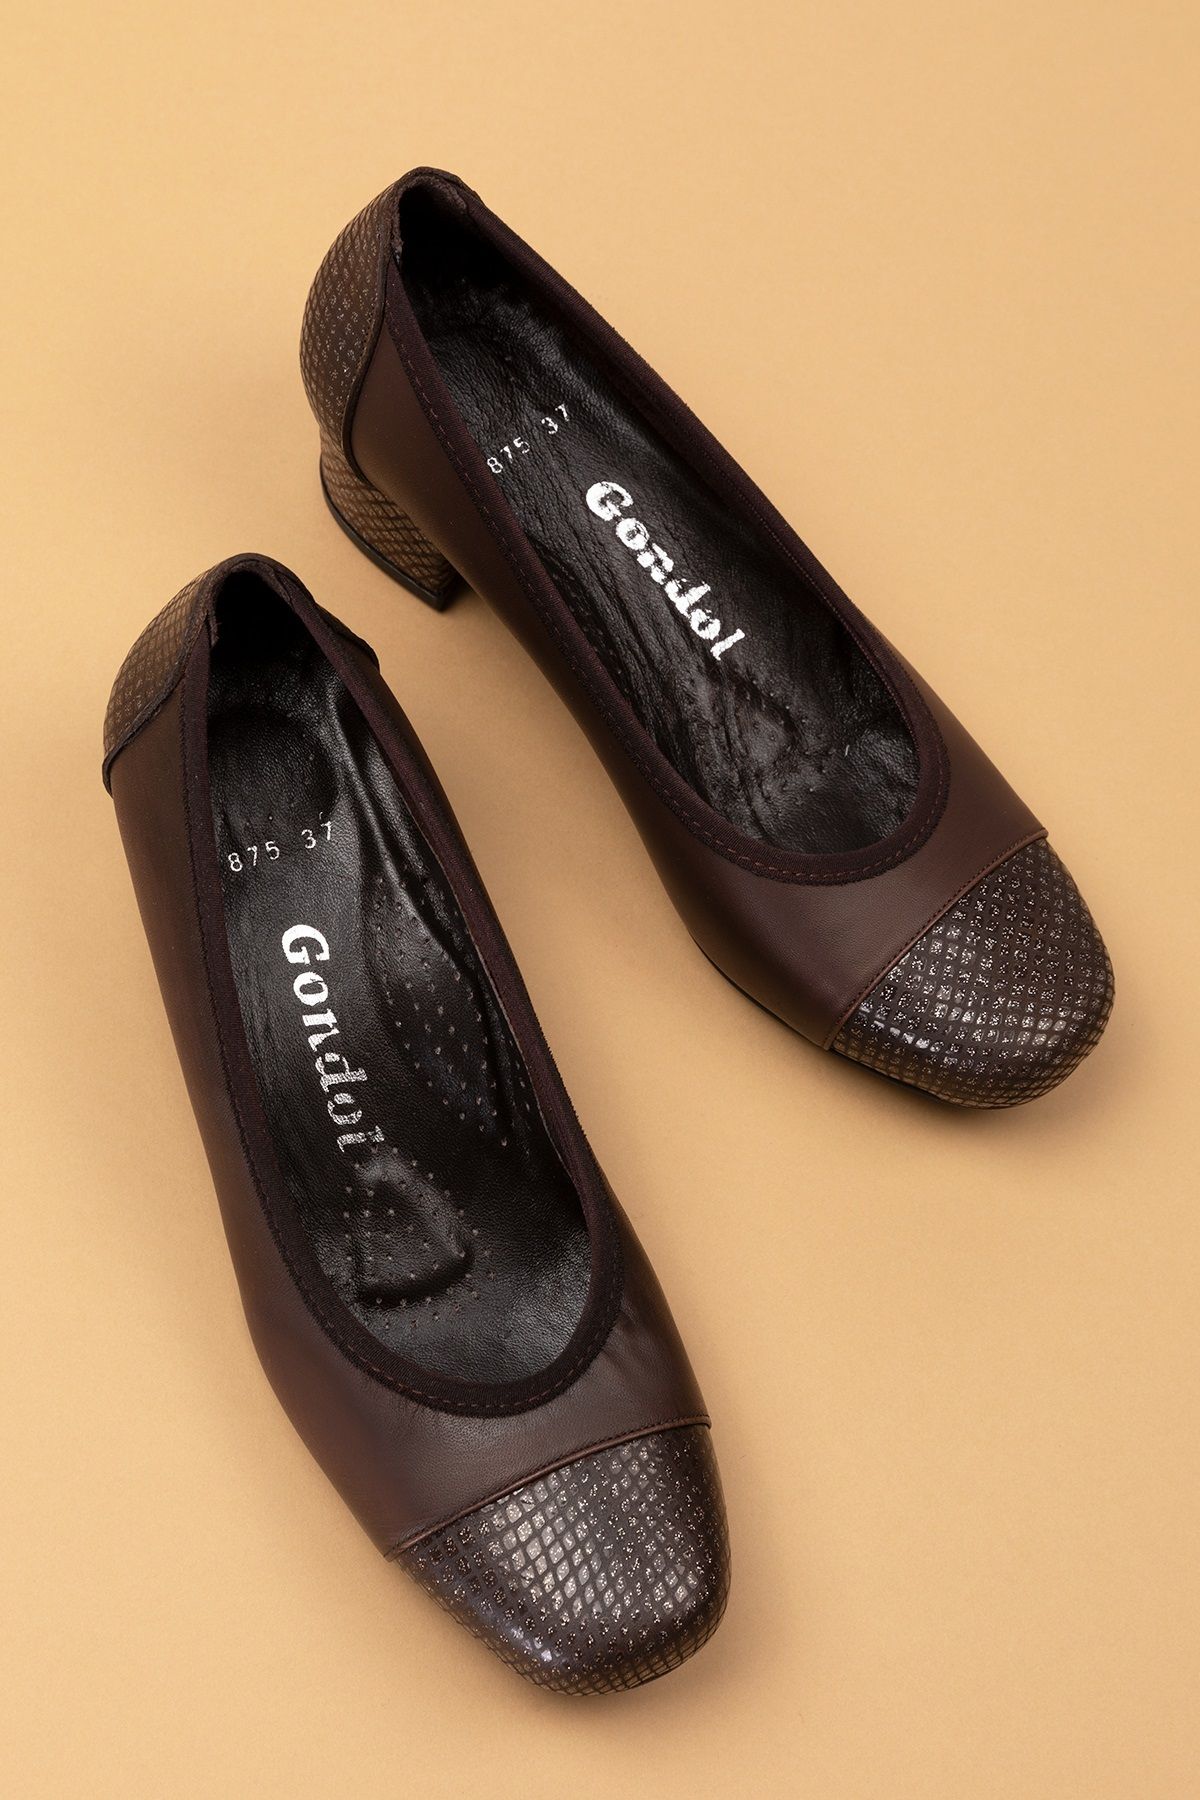 Gondol Kadın Hakiki Deri Rahat Günlük Topuklu Ayakkabı şhn.875 Kahverengi